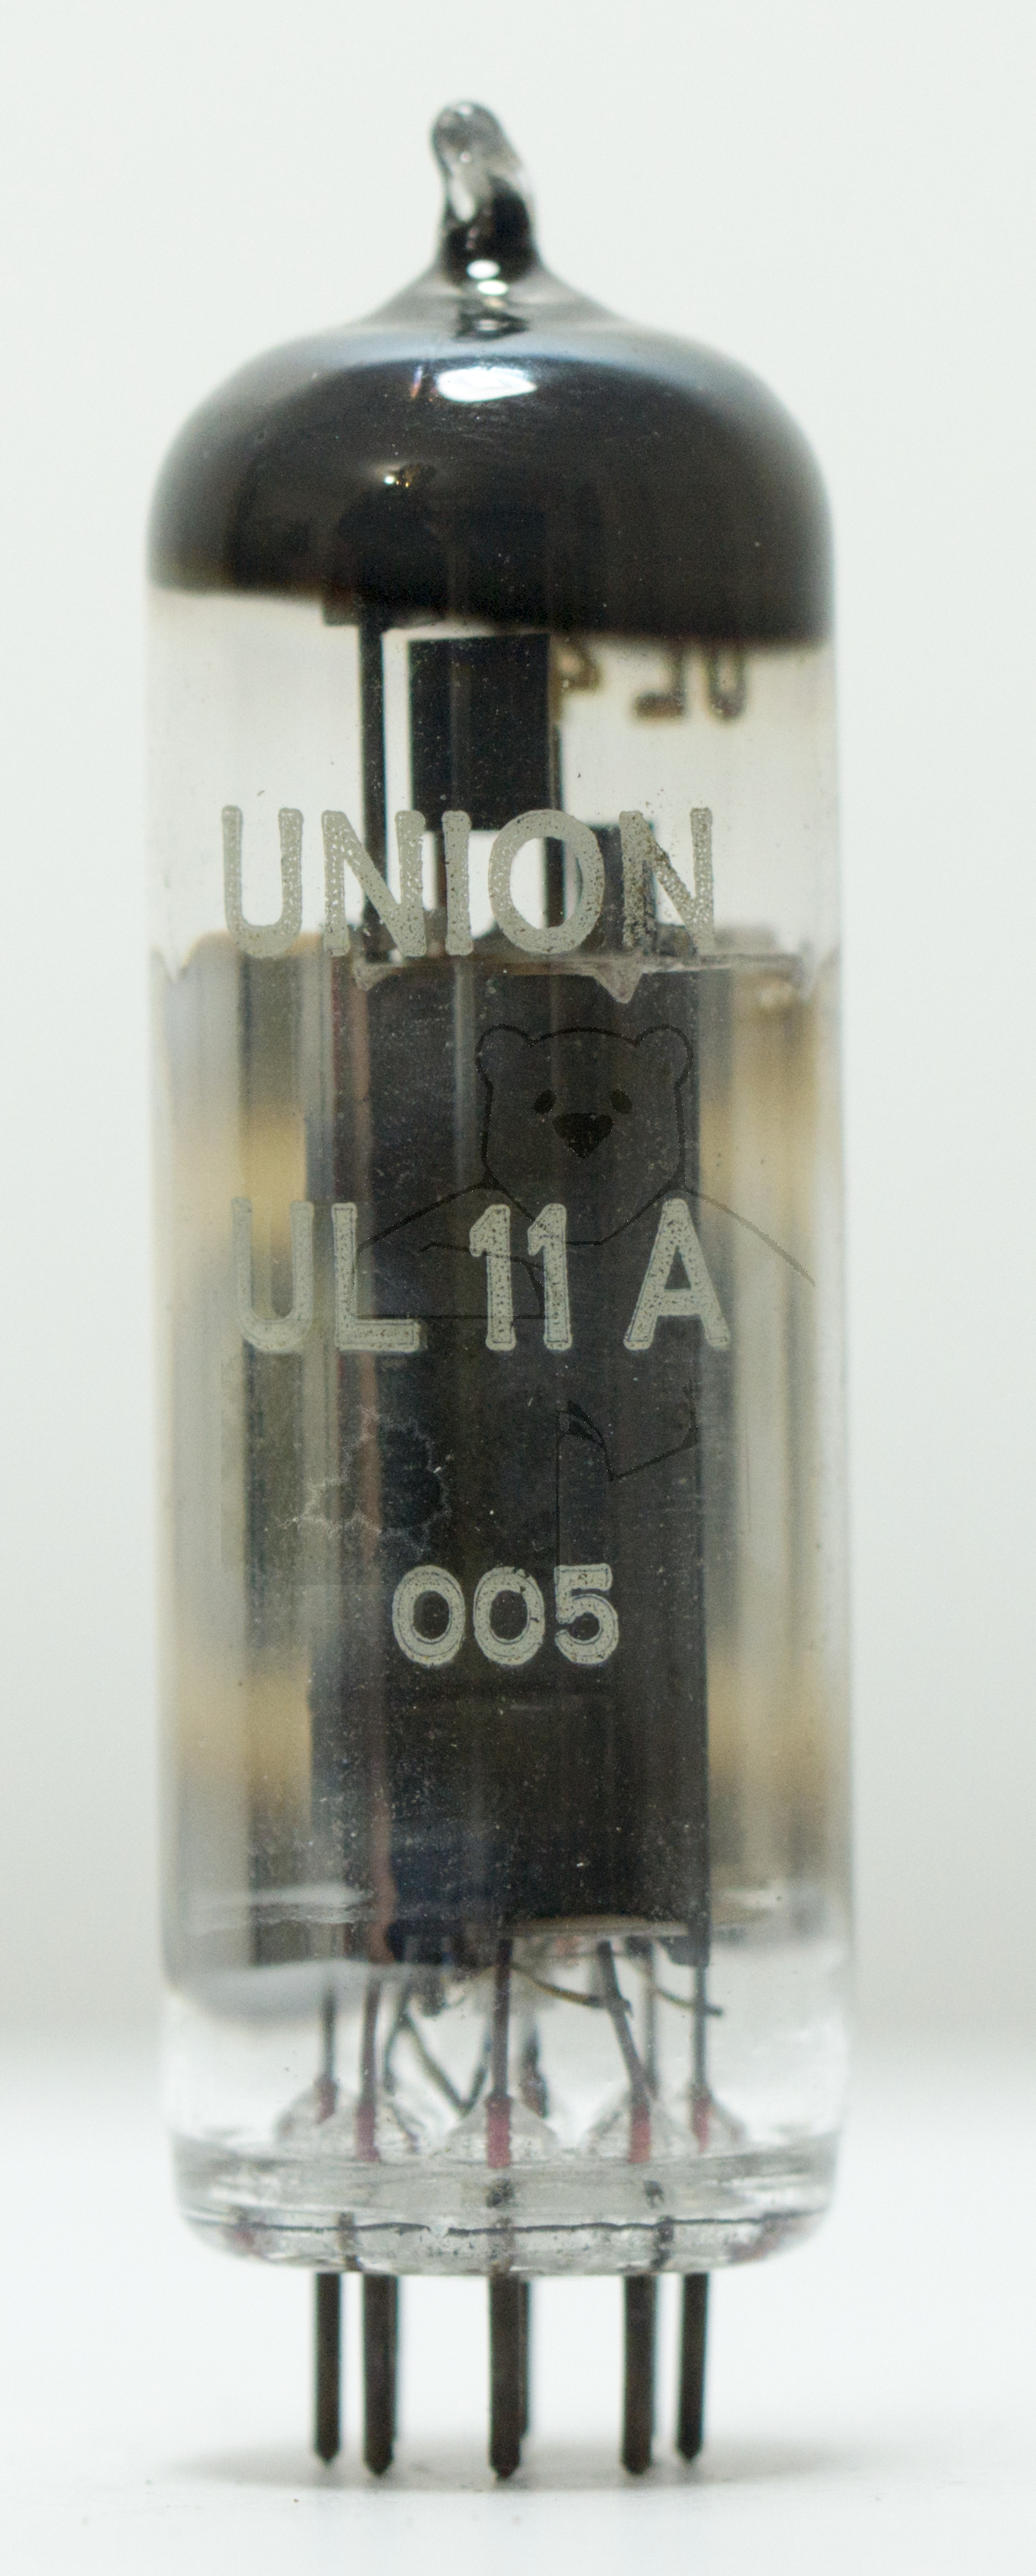 Röhre UL41 #5392 Bild 1 - Gestempelt als 'UL11A' für einen Adapter UL41 auf UL11